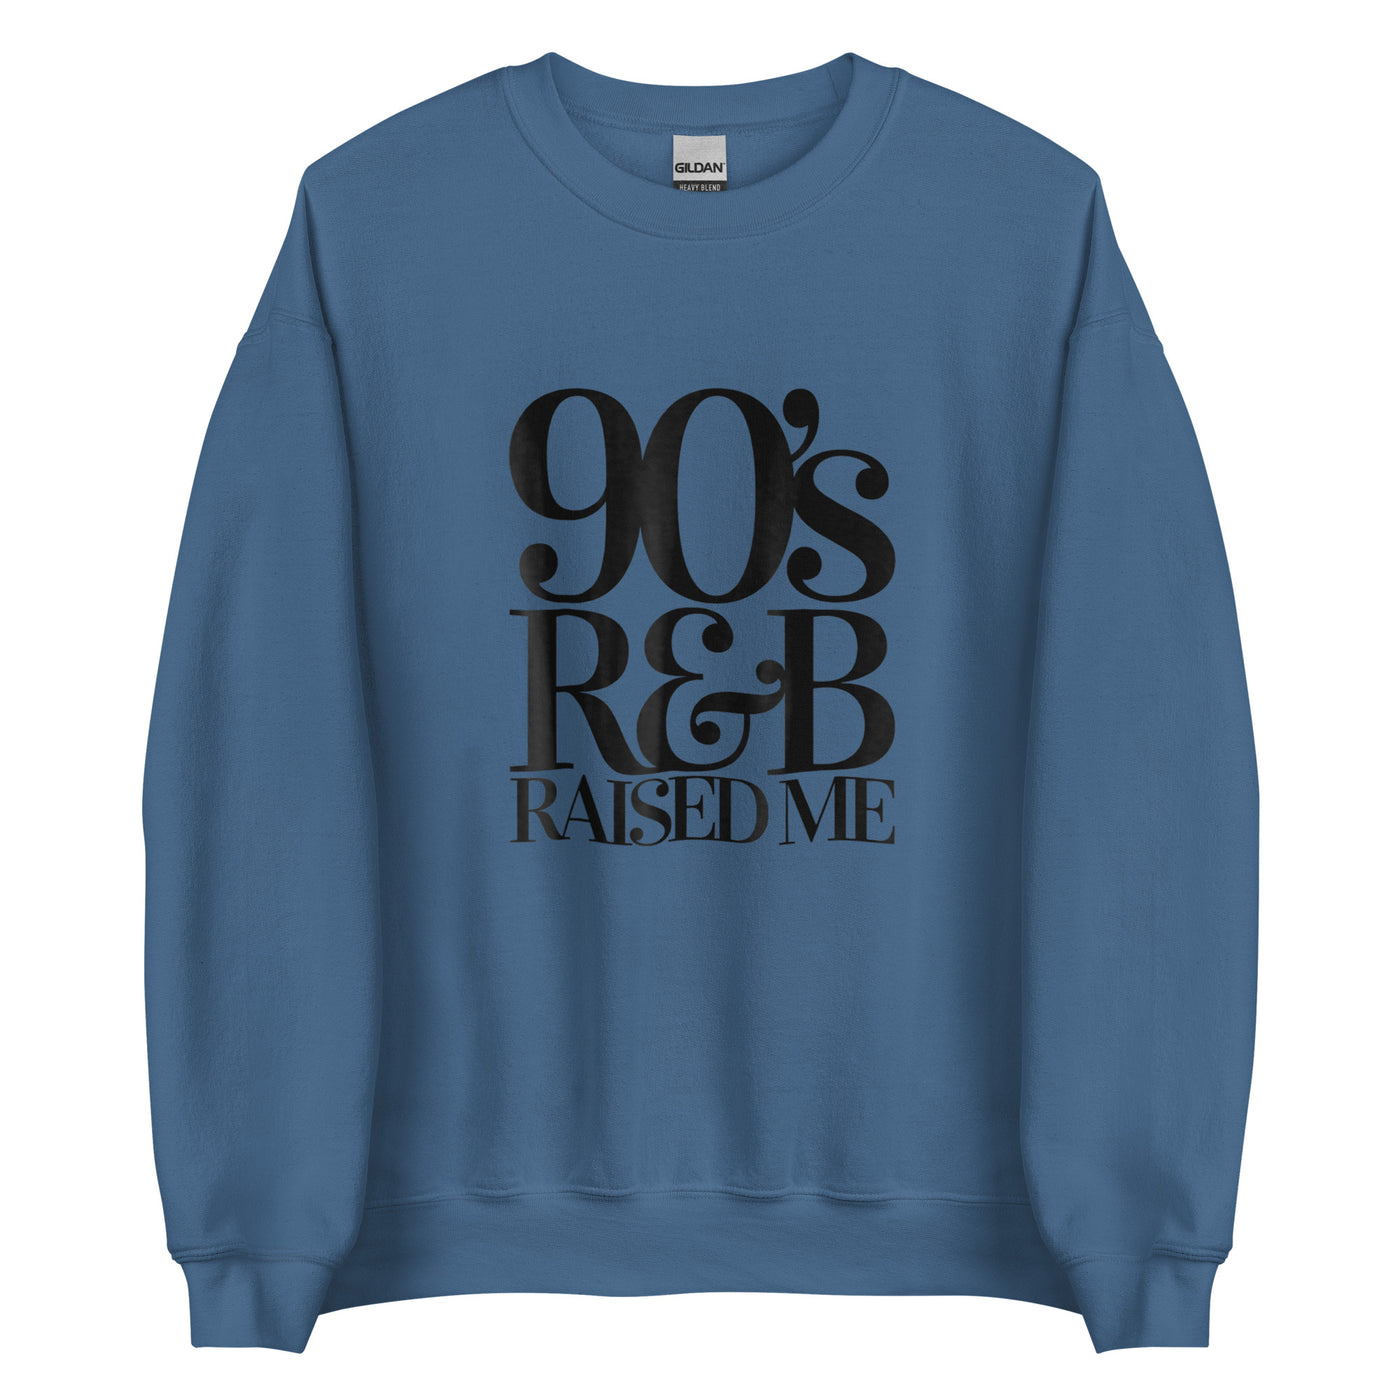 90' R&B RAISED ME Unisex Sweatshirt